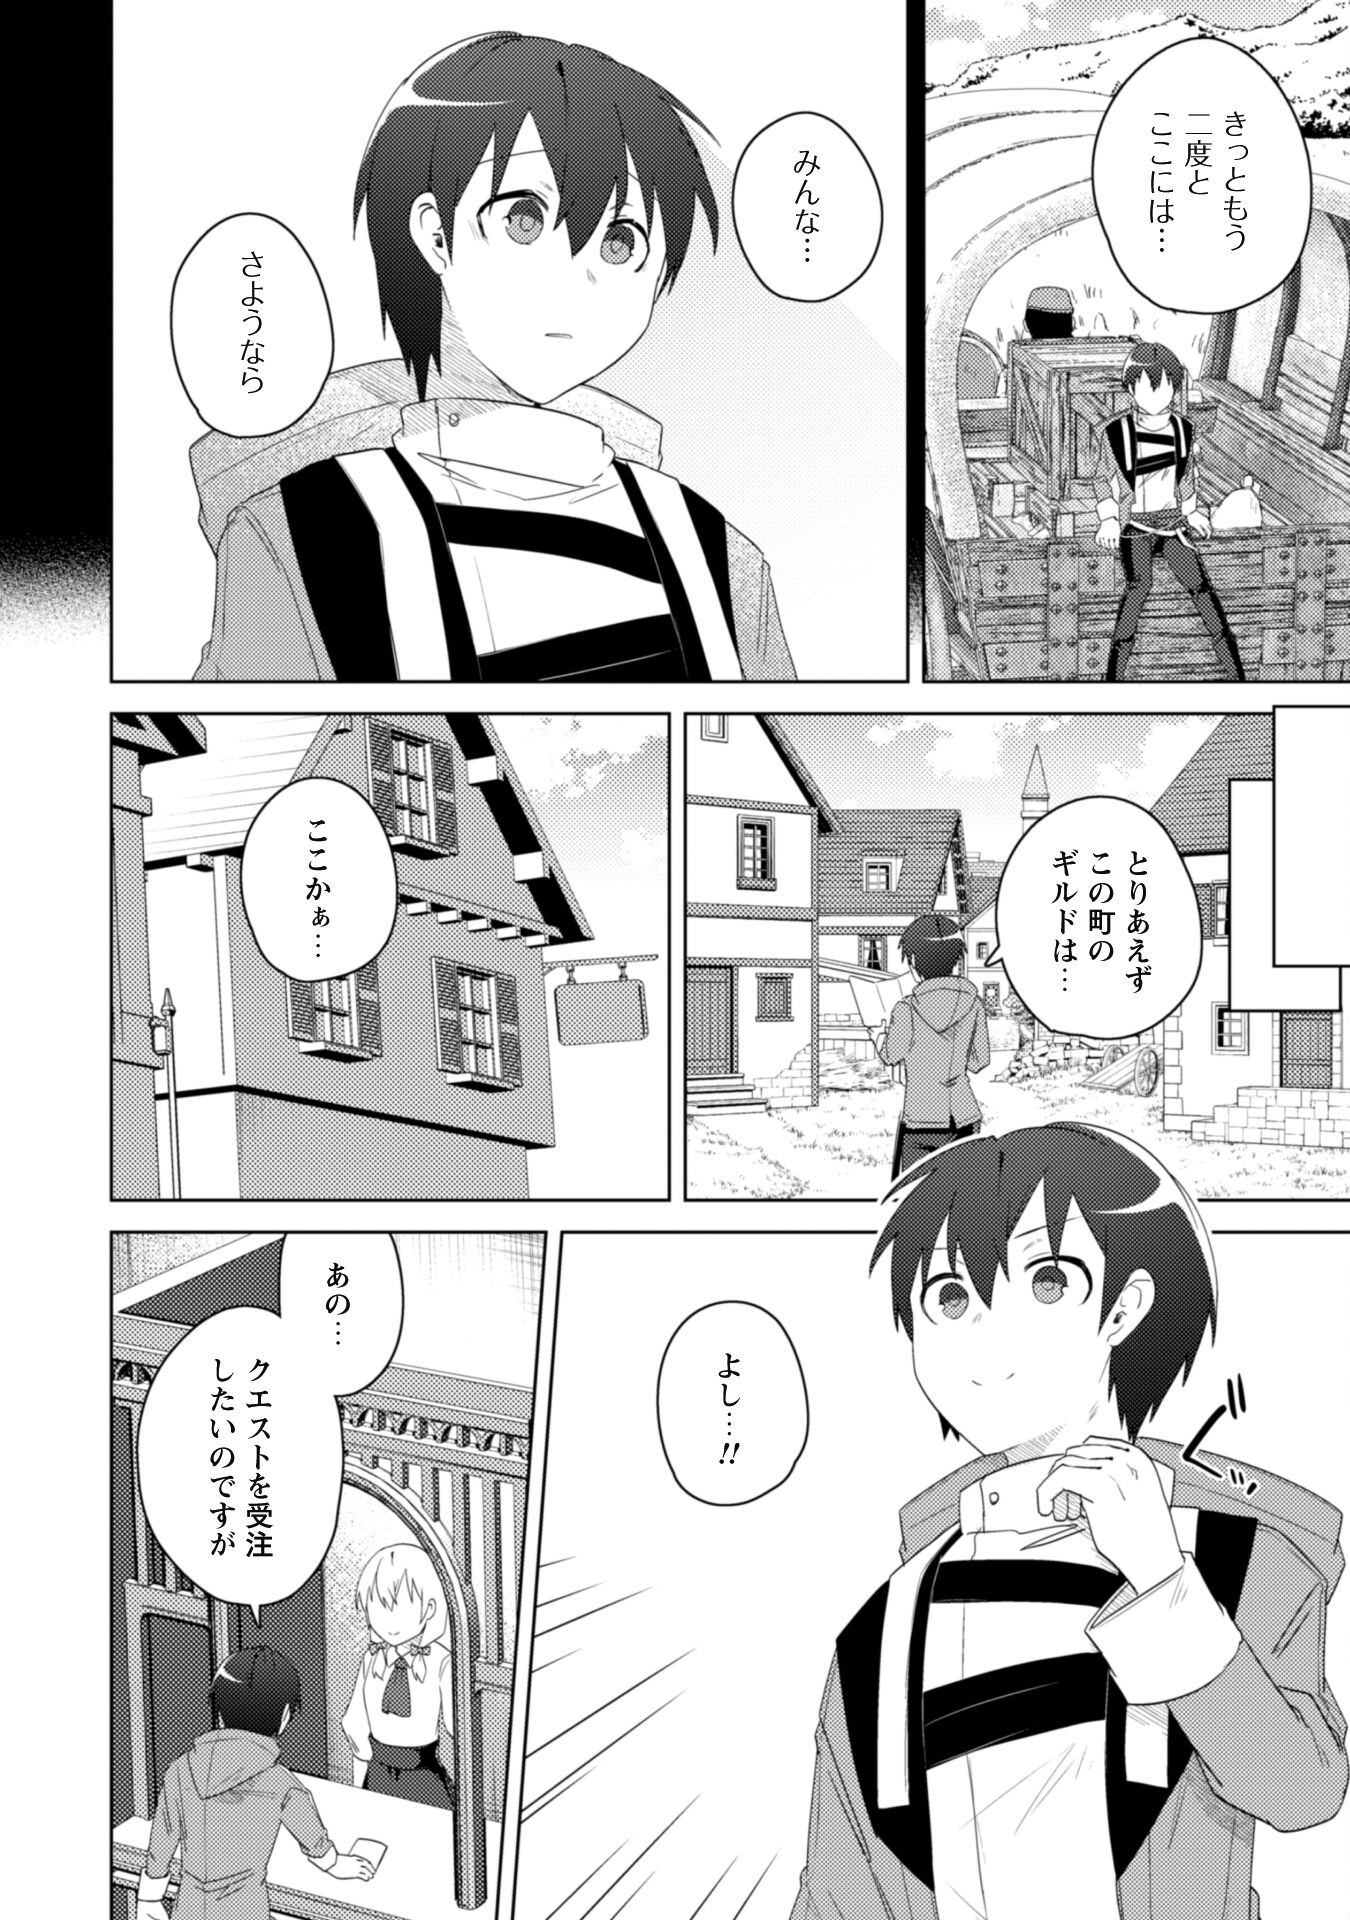 Bakunyuu-tachi ni Tsuihou Sareta ga Modore to Iwaretemo, Mou Oso… Modorimashiyuu! - Chapter 4 - Page 2